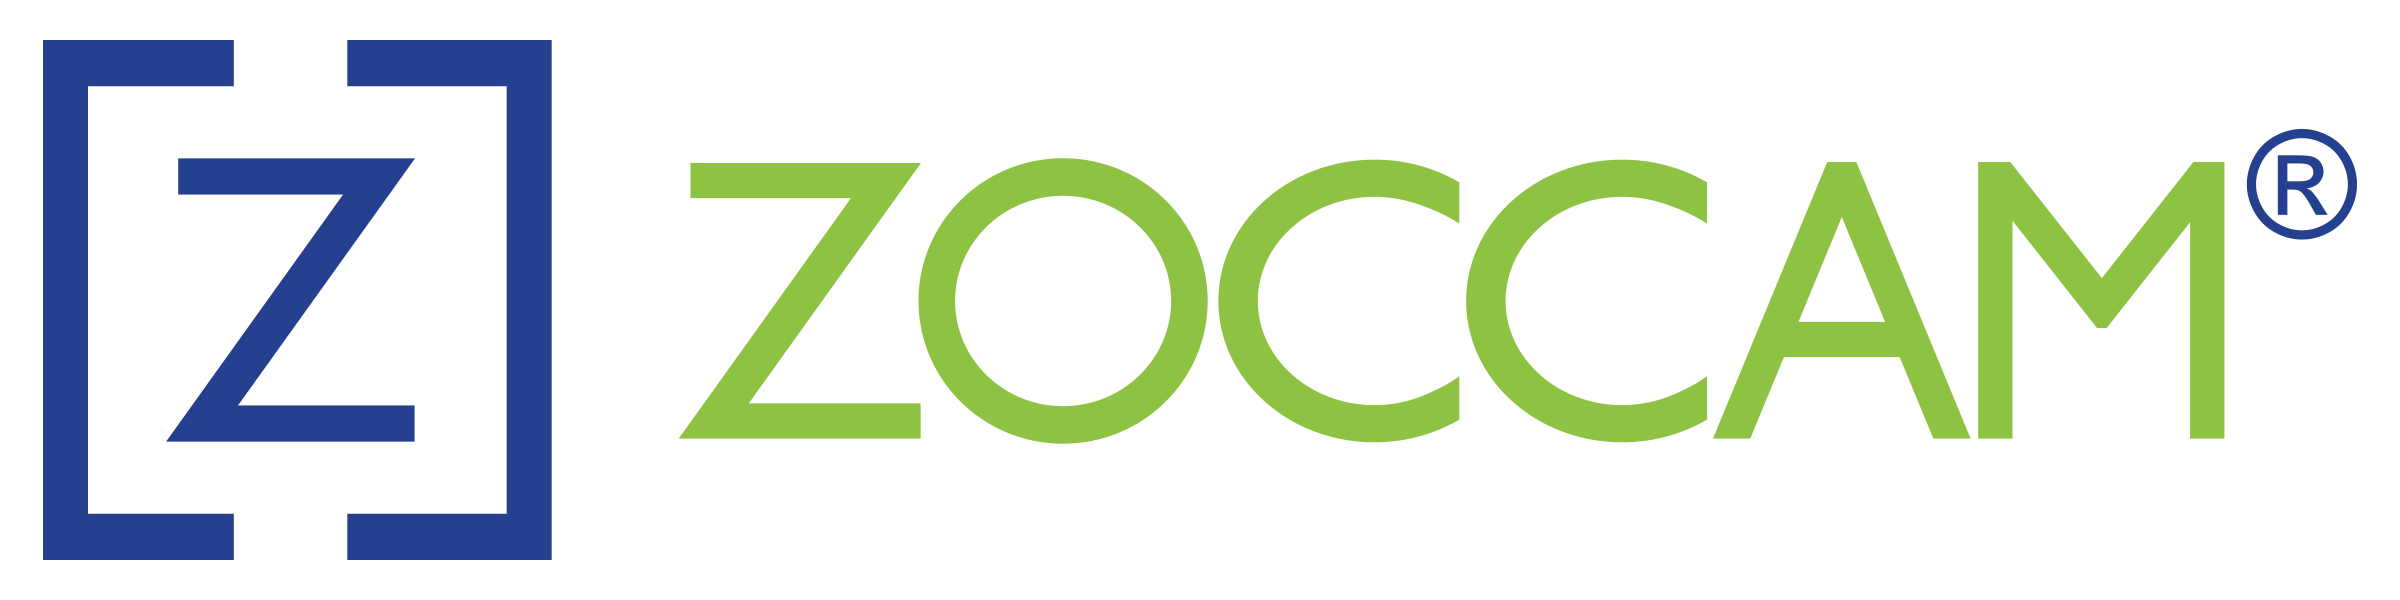 zoccam-logo